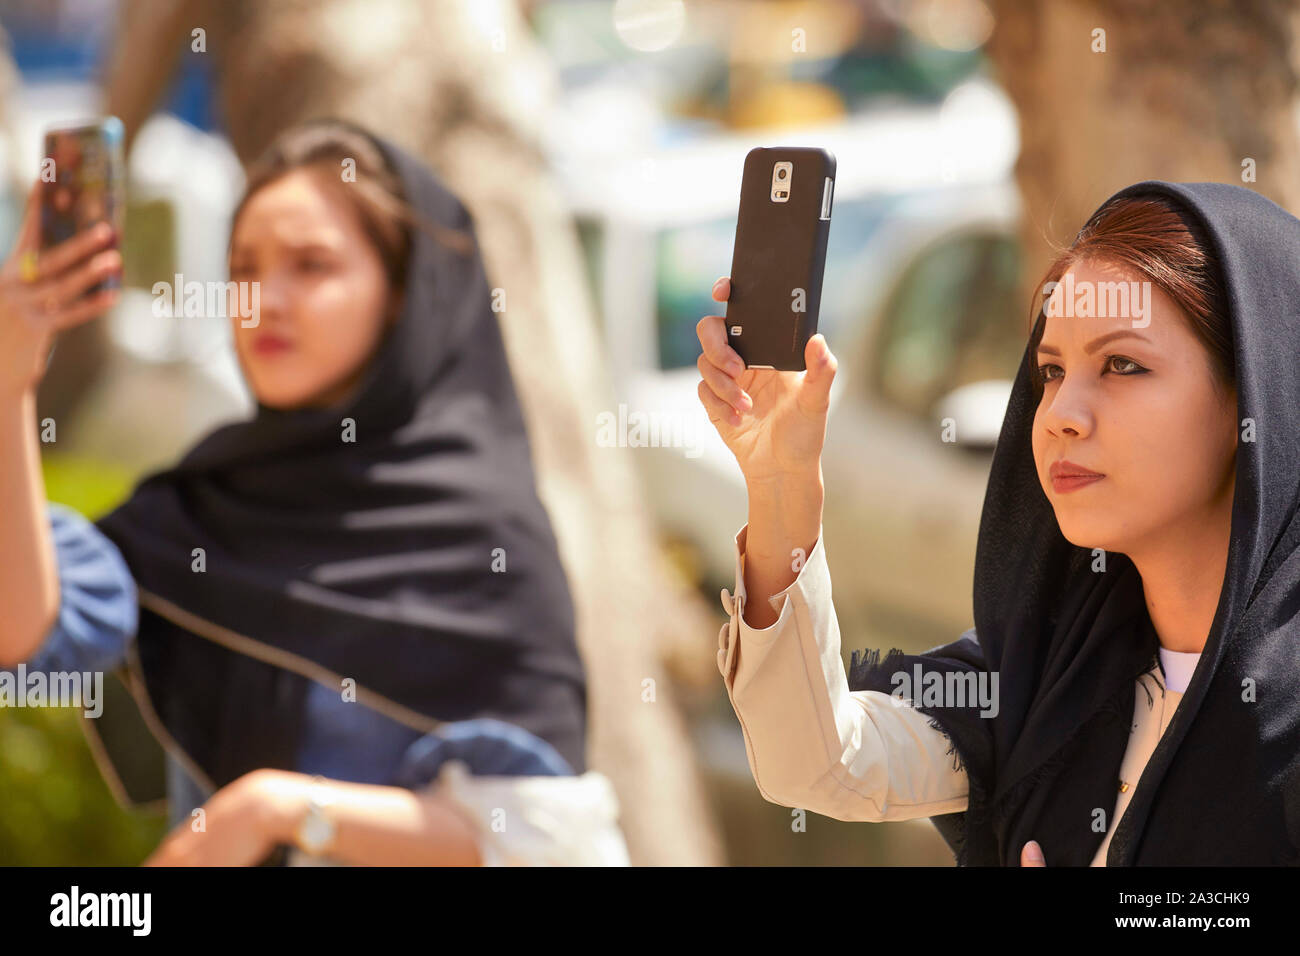 Iran Tehran Post museum making selfies  29-03-2017 foto: Jaco Klamer Stock Photo